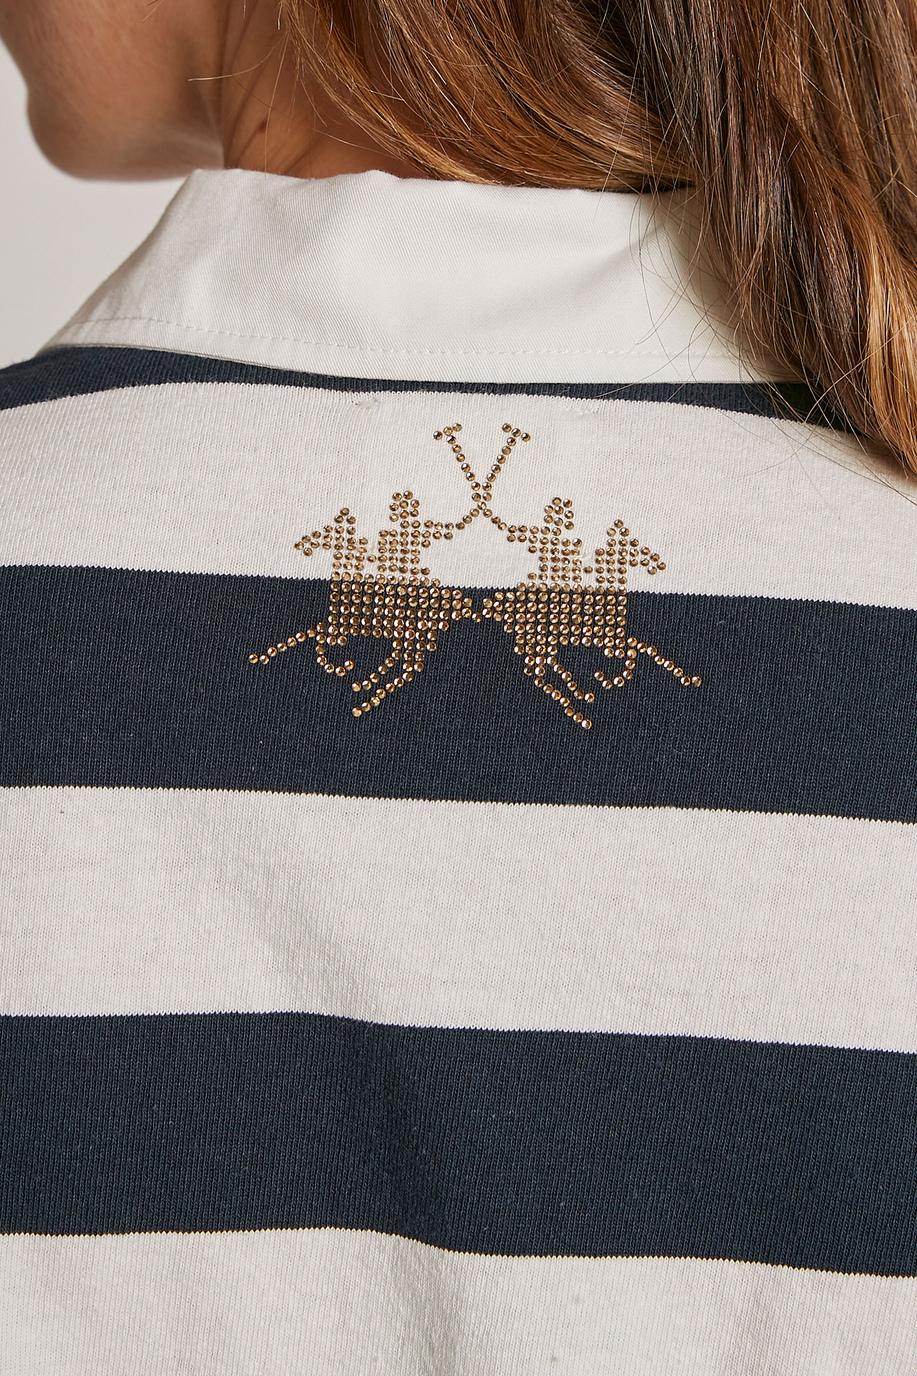 Camiseta de mujer de algodón con logotipo, corte regular